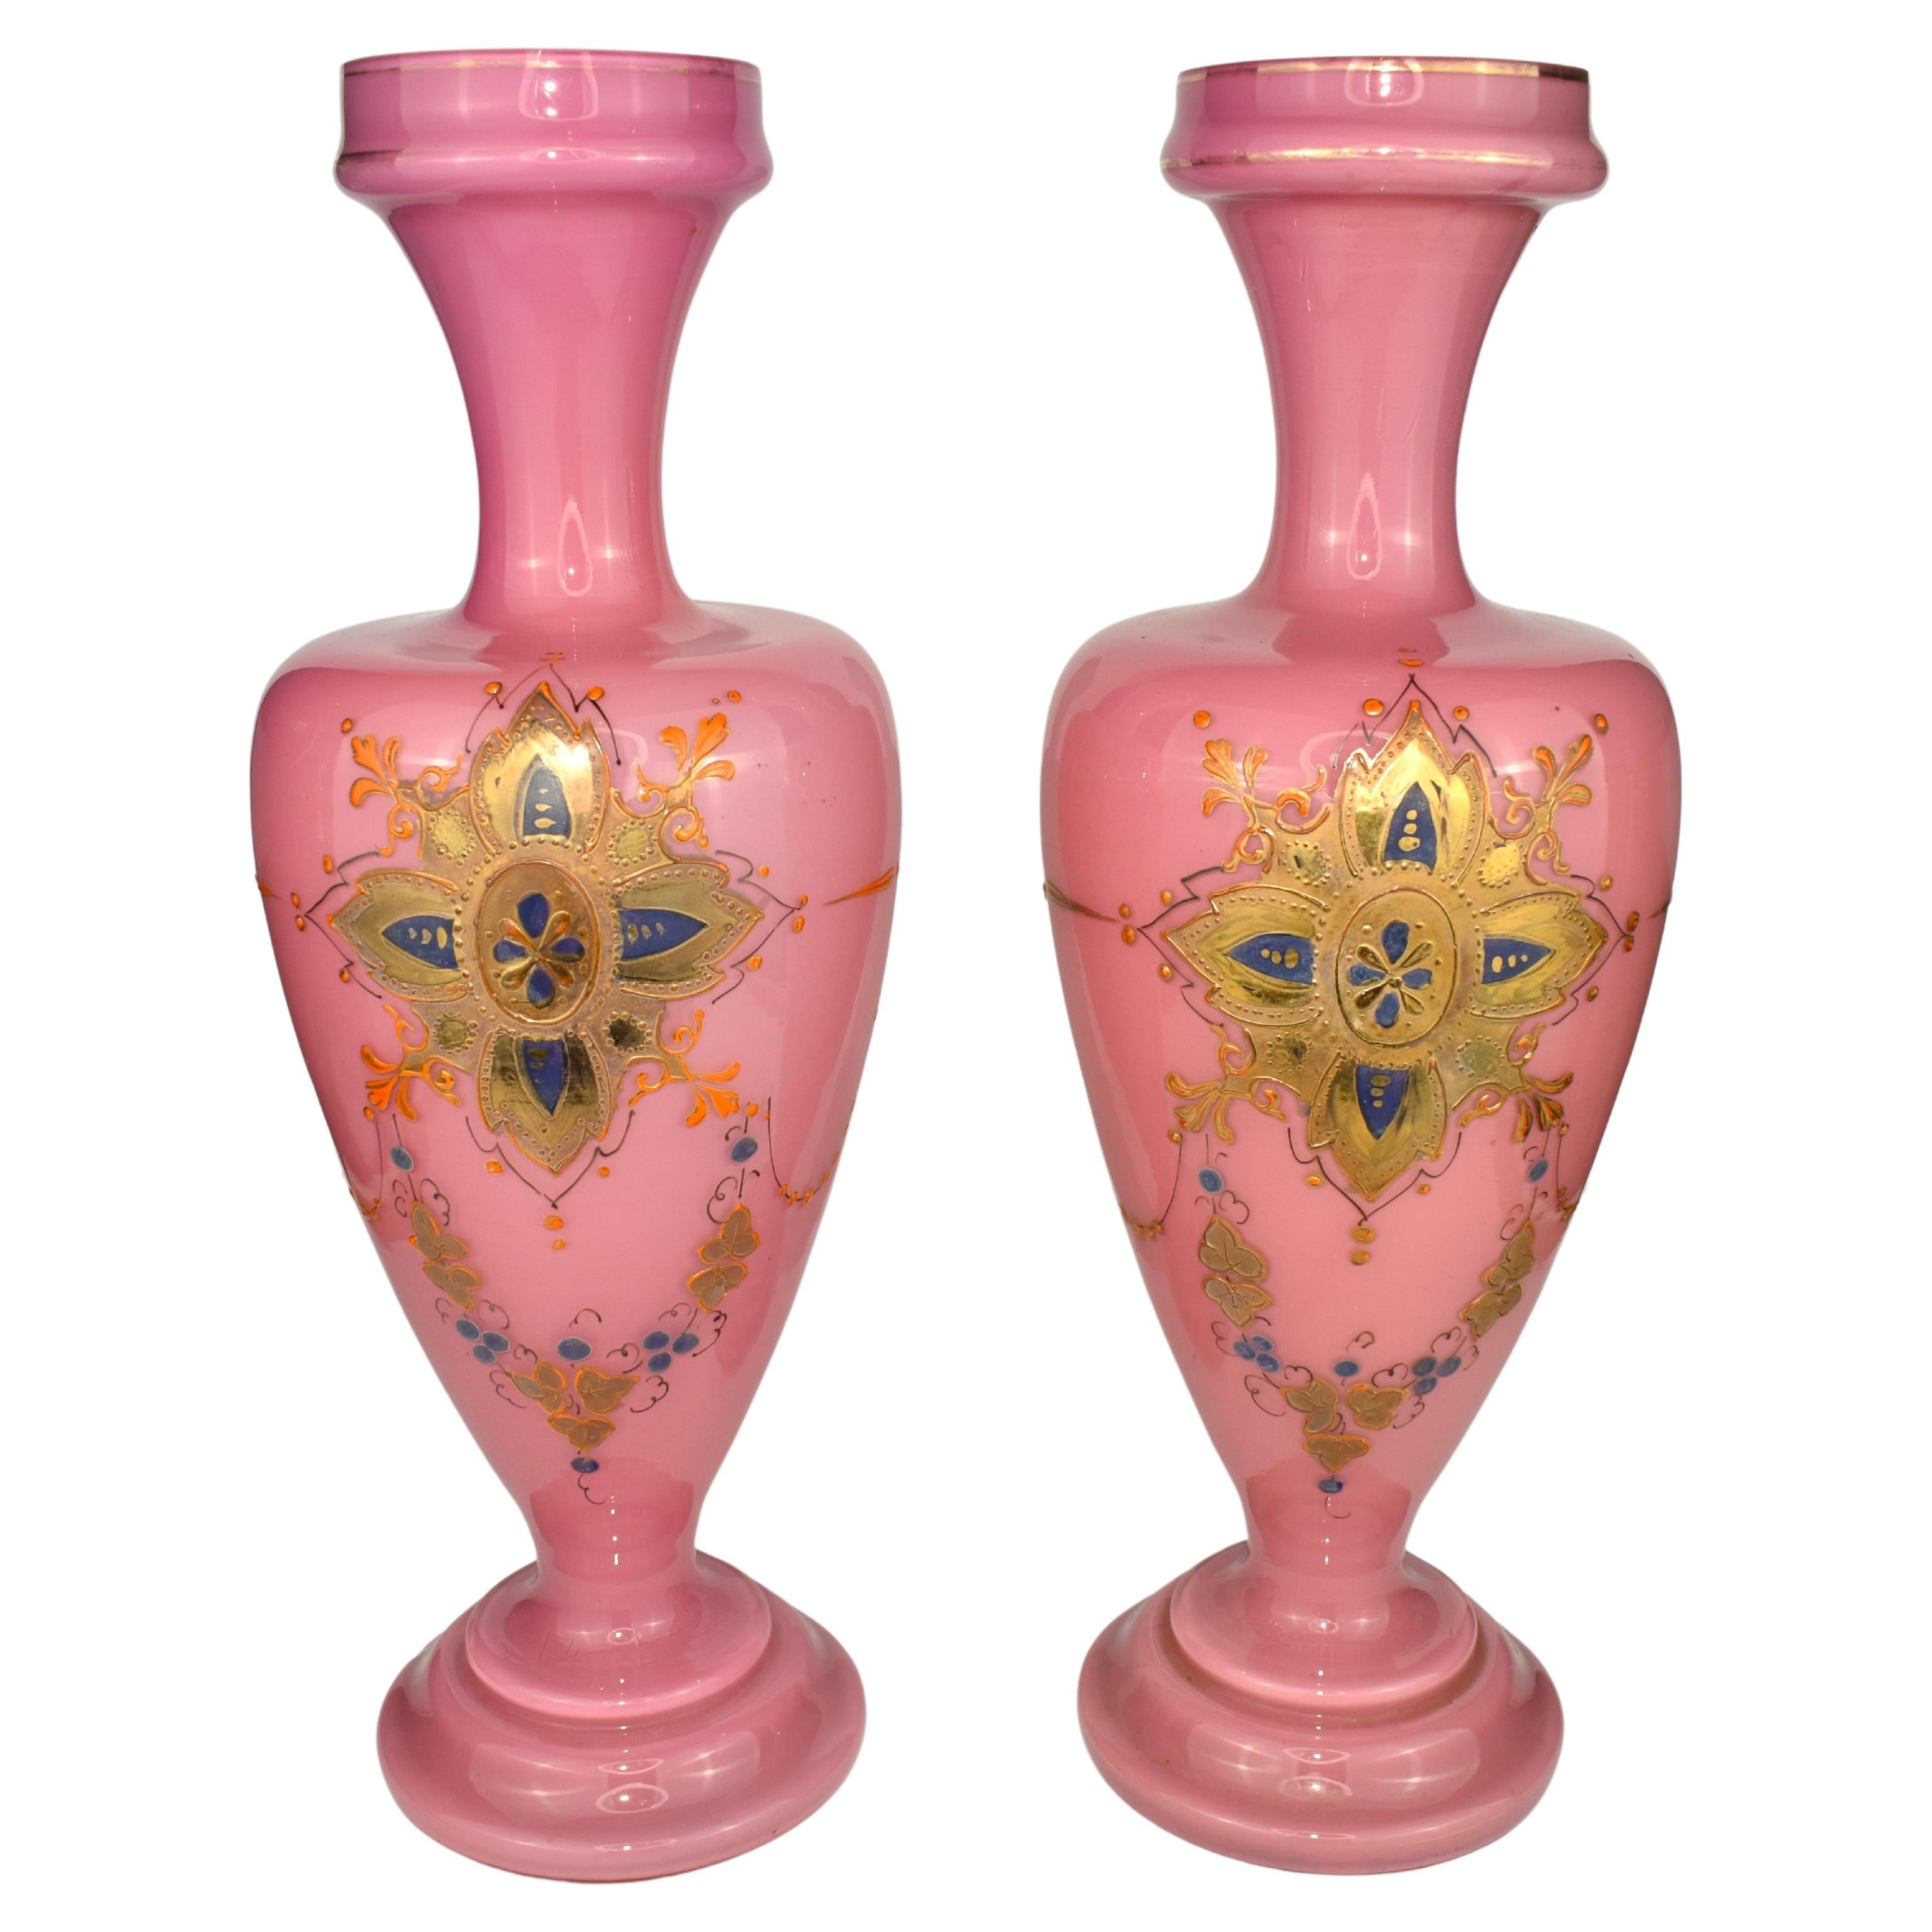 Eccezionale coppia di vasi in vetro opalino smaltato

Corpo circolare riccamente dipinto a mano con decorazioni in oro e smalto

Francia, 1880 circa